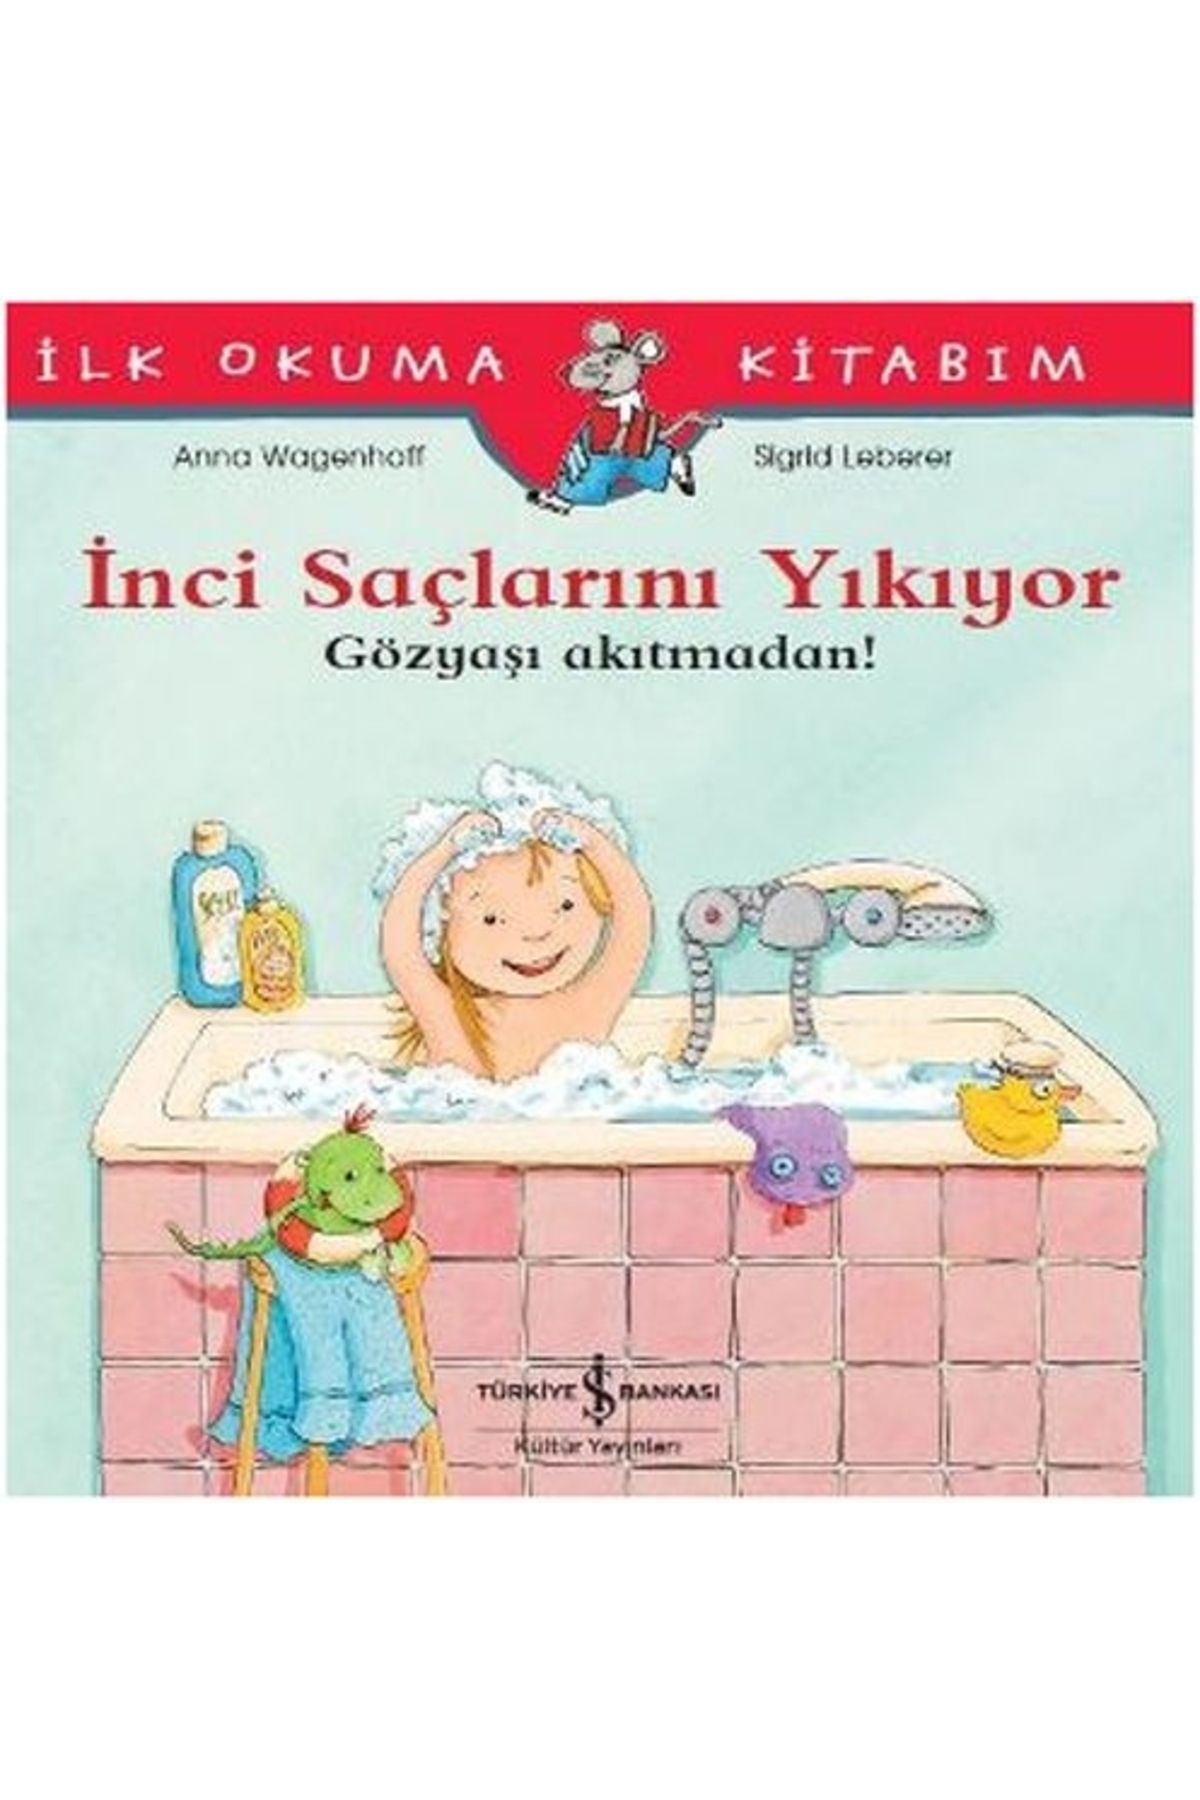 Türkiye İş Bankası Kültür Yayınları İlk Okuma Kitabım - Inci Saçlarını Yıkıyor - Gözyaşı Akıtmadan!